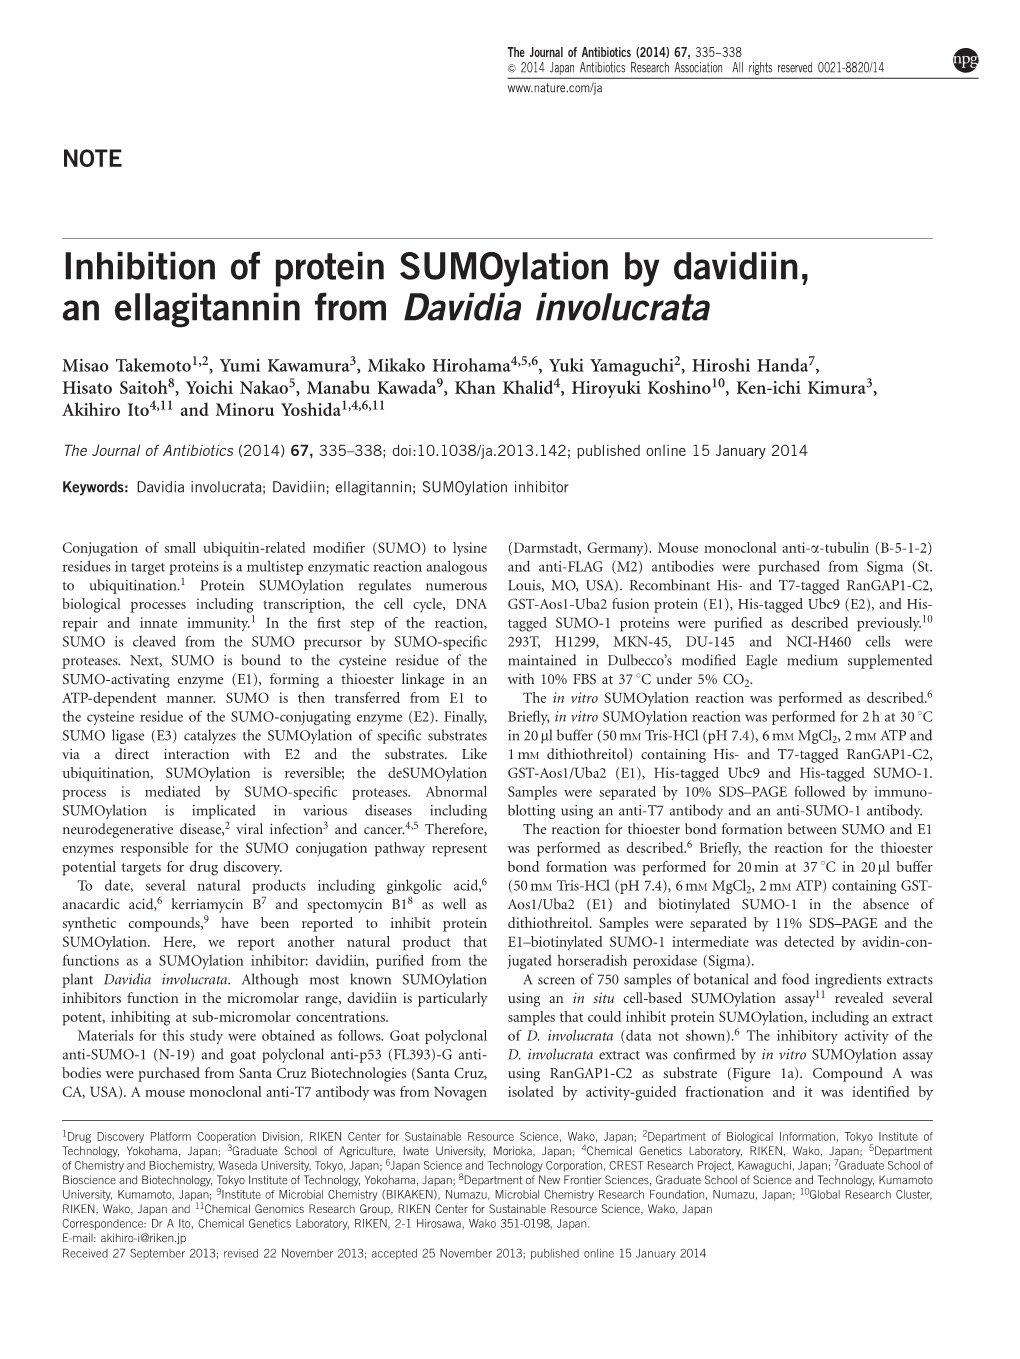 Inhibition of Protein Sumoylation by Davidiin, an Ellagitannin from Davidia Involucrata